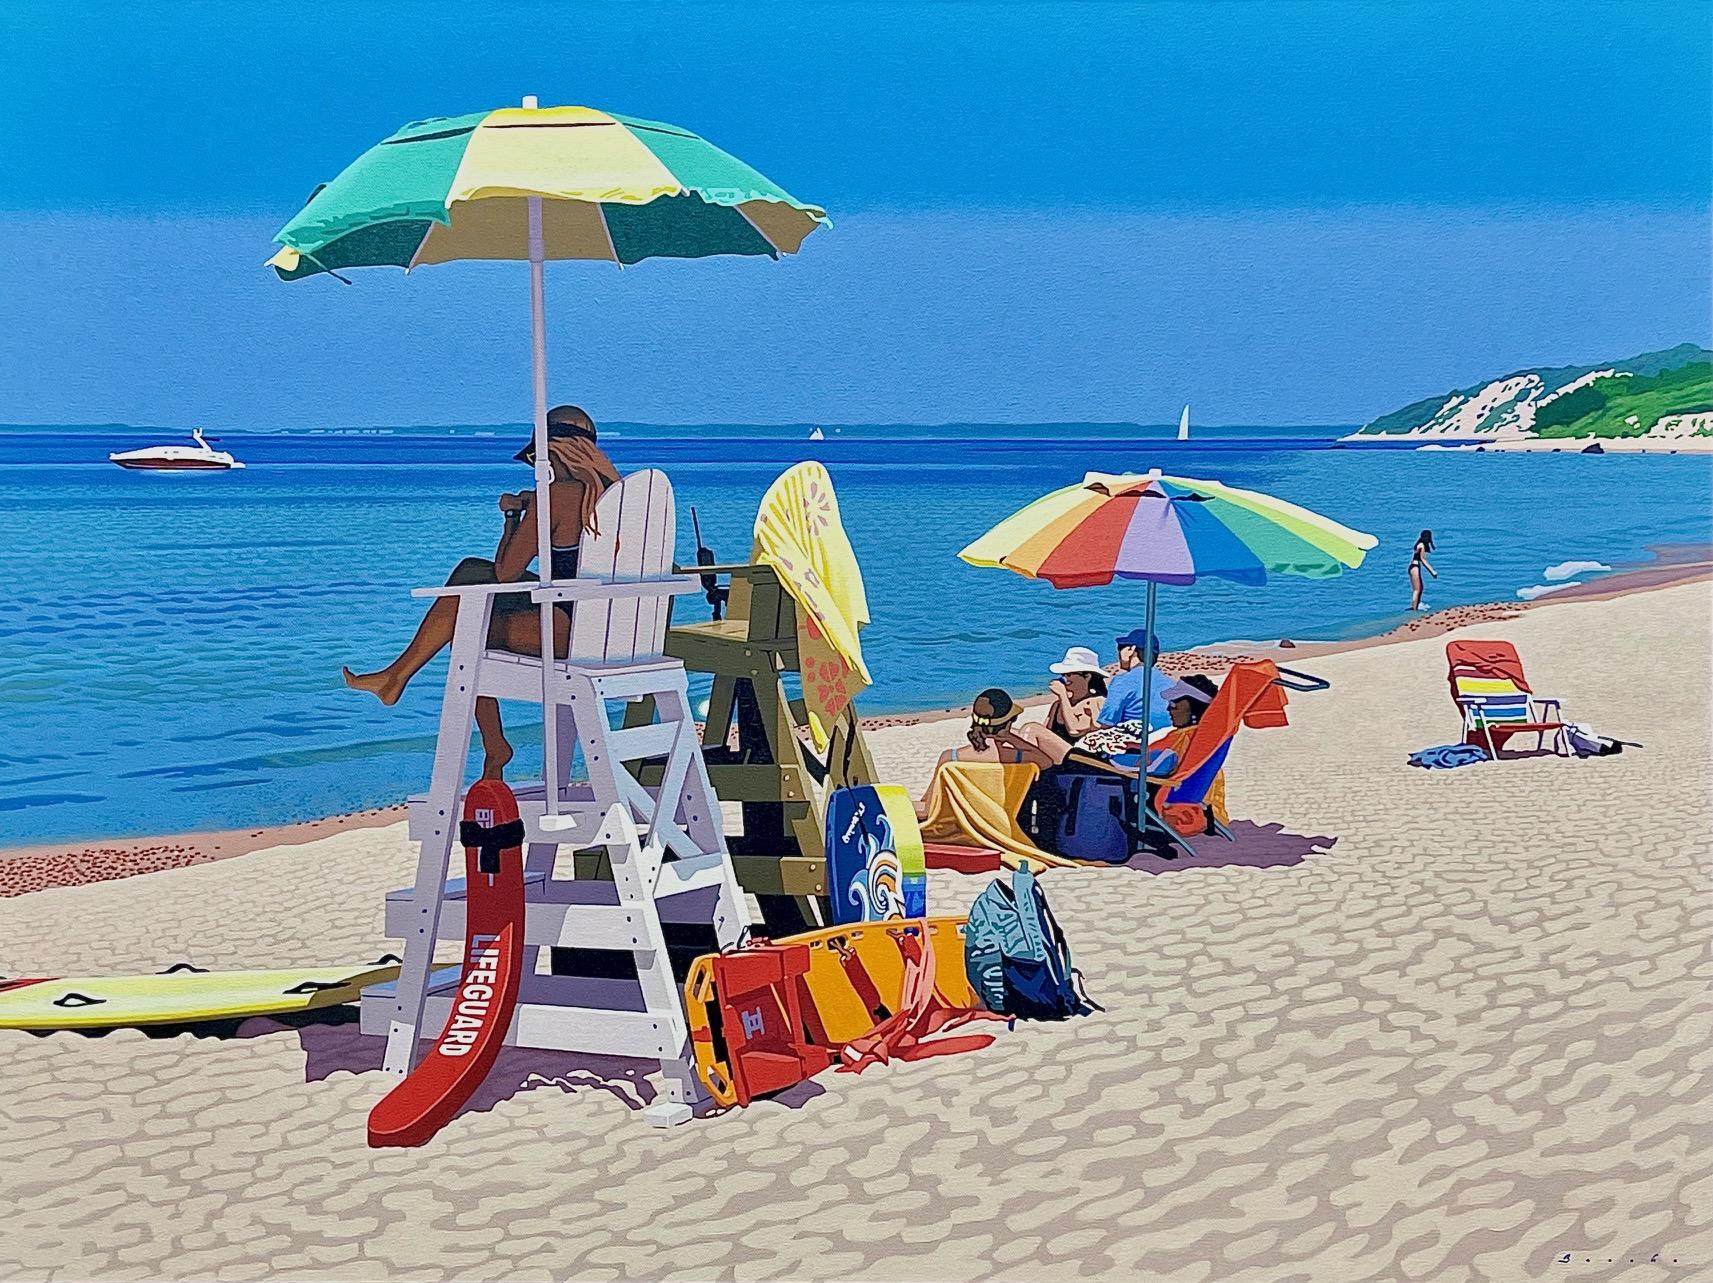 Fotorealistisches Ölgemälde „Sommer Job“ eines Lebensgefährten am Strand, Schirm